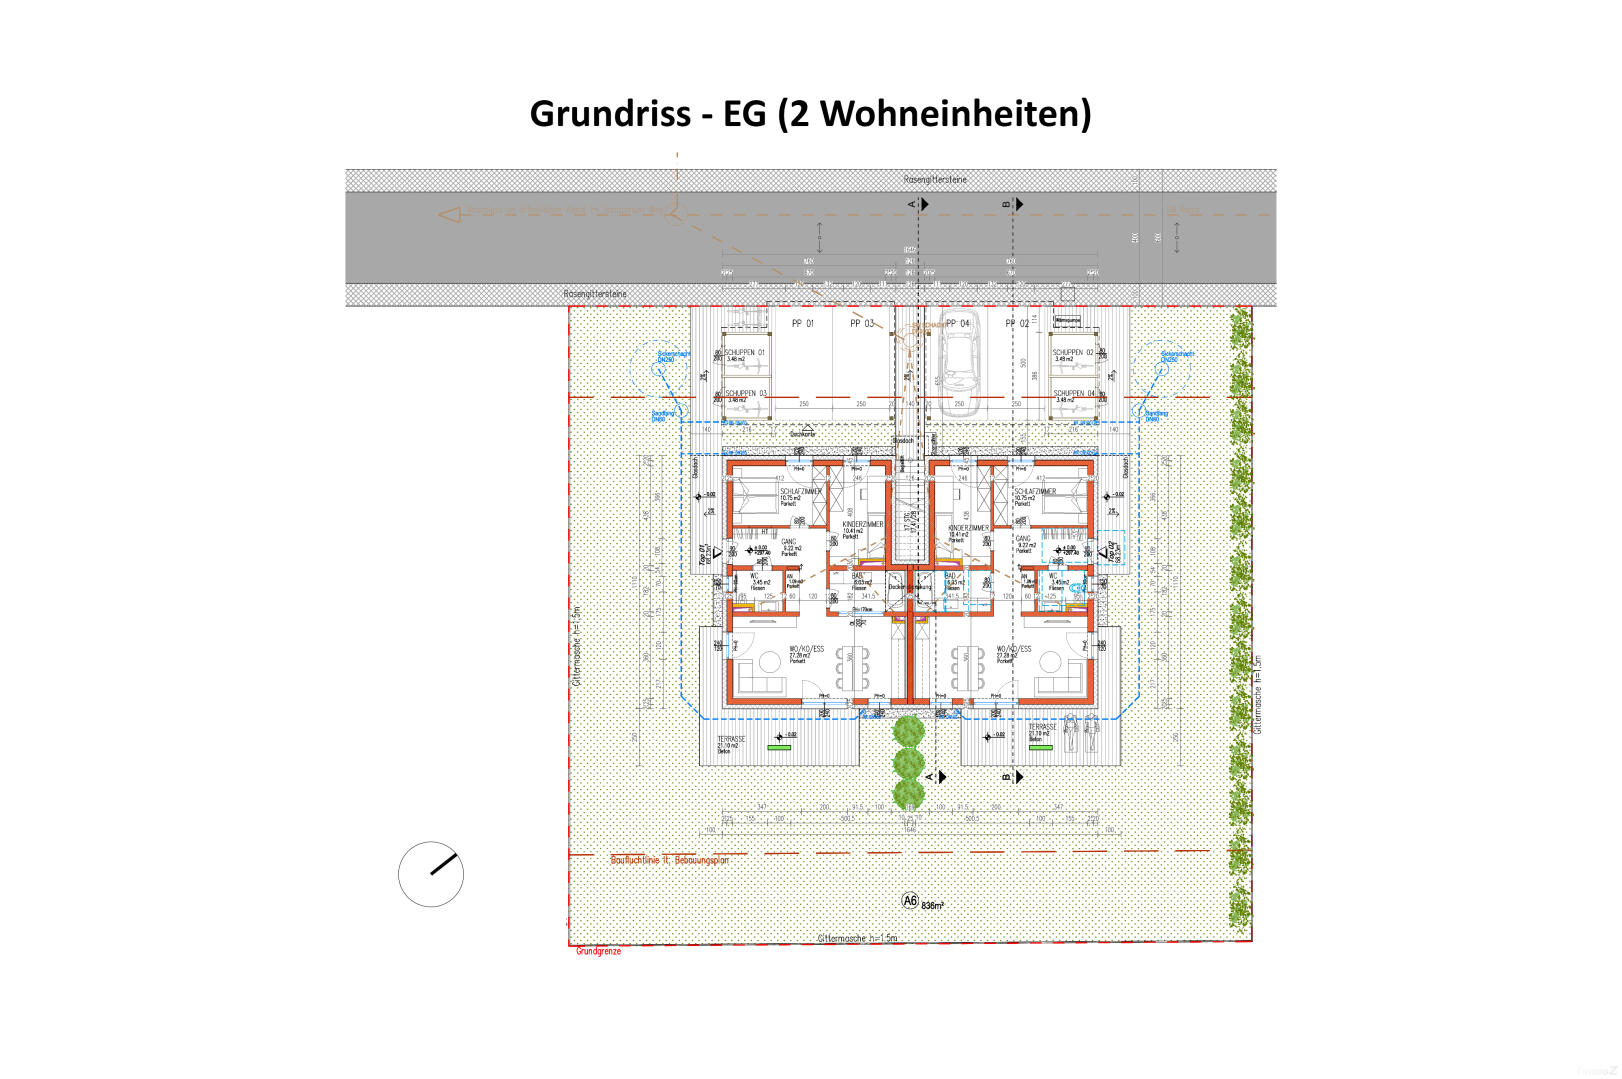 Wohnung zu kaufen: Kettenbachweg 398, 8271 Bad Waltersdorf - Grundriss EG (2 Wohneinheiten)